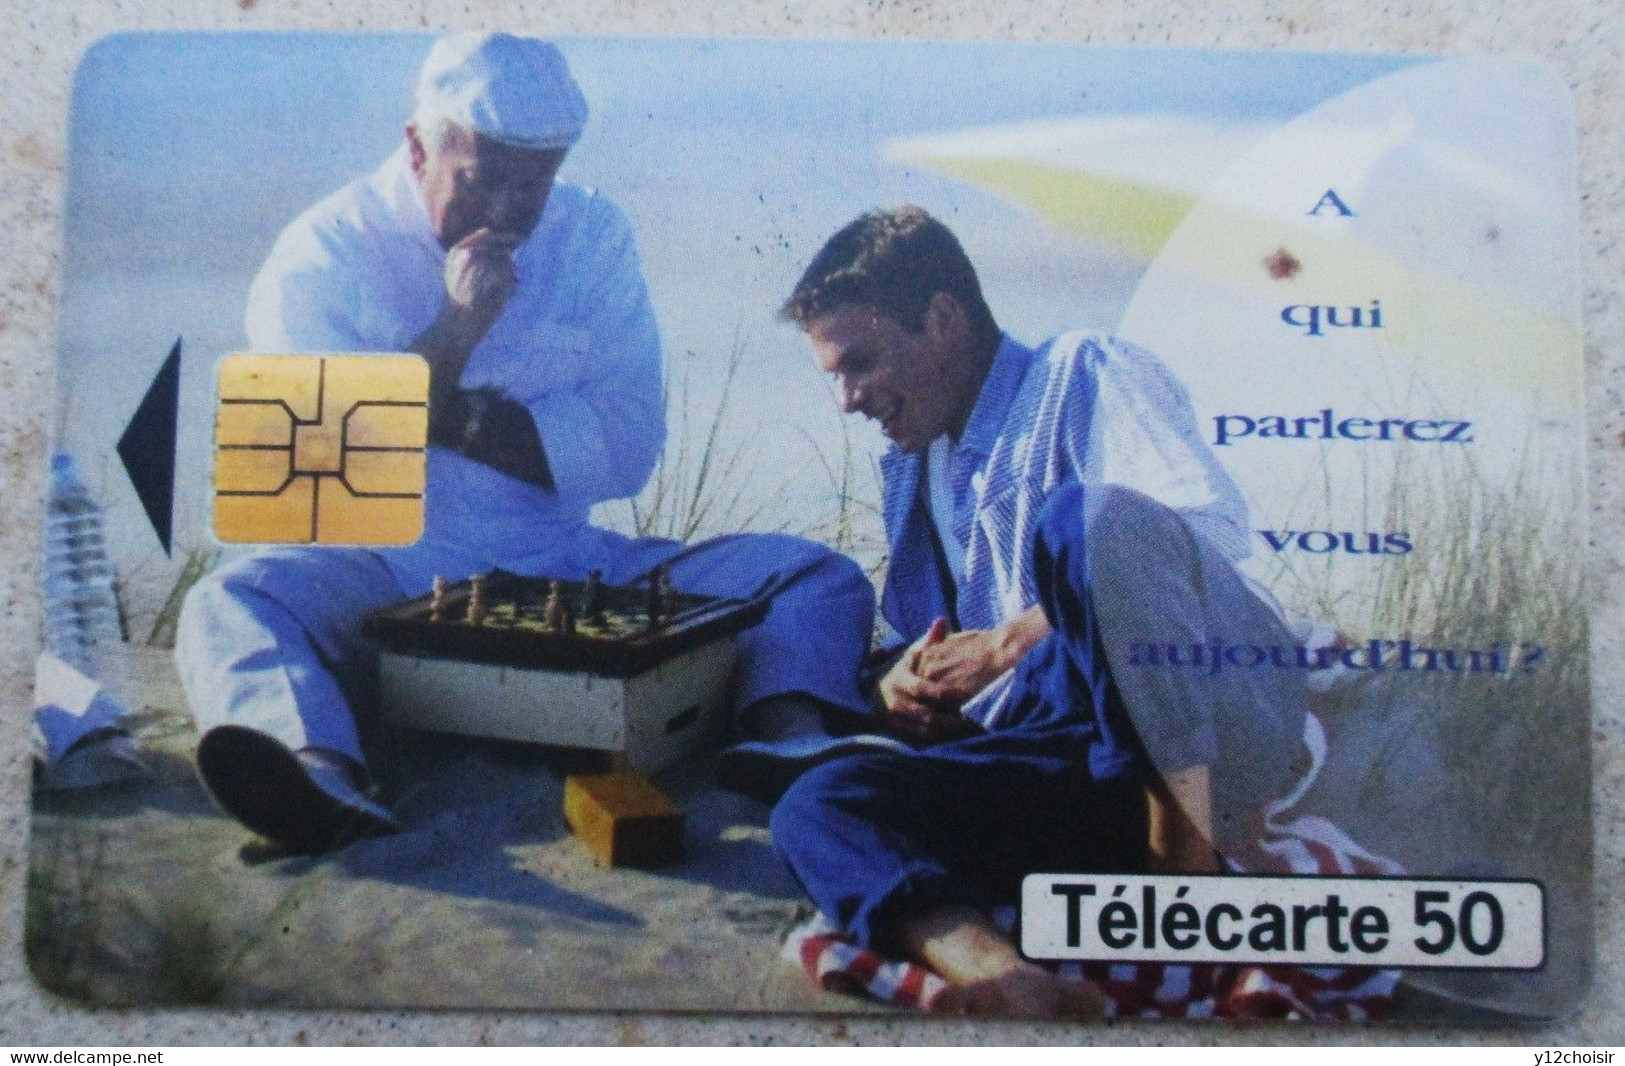 Télécarte 50 Joueurs Jeux D' échecs 1998 500 000 Ex FRANCE TELECOM - Jeux